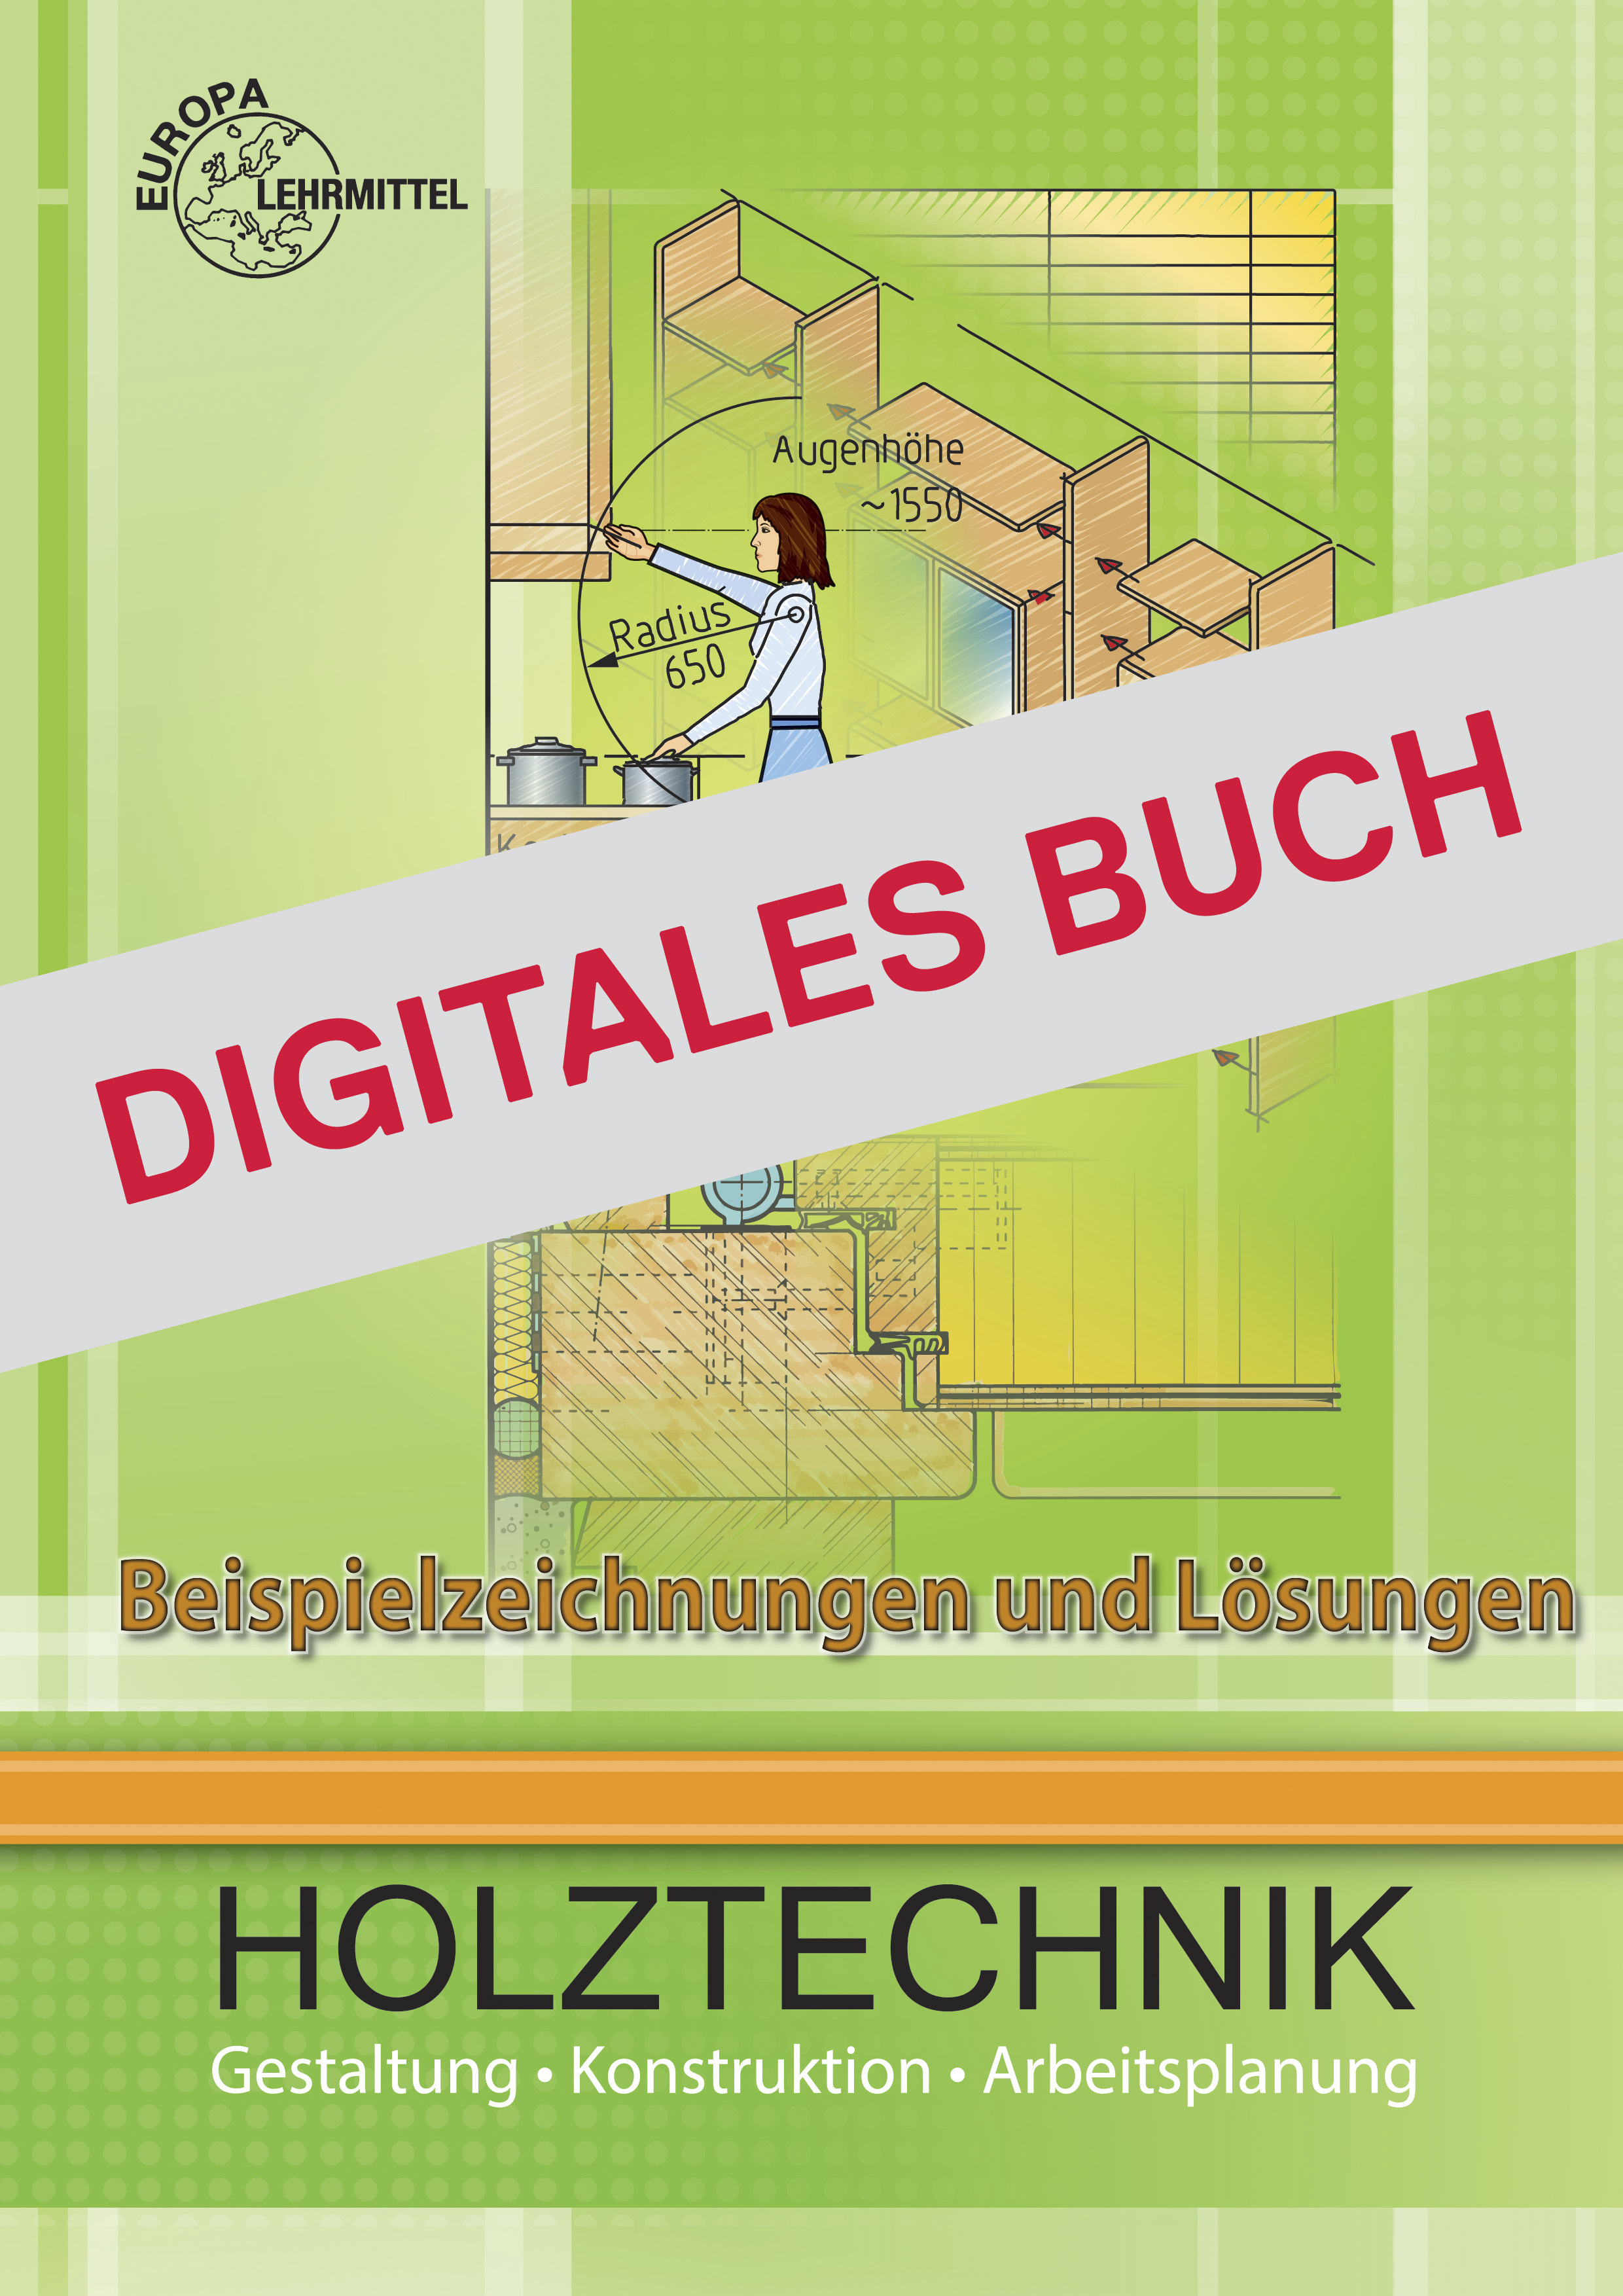 Beispielzeichnungen und Lösungen zu Holztechnik ZHO - Digitales Buch